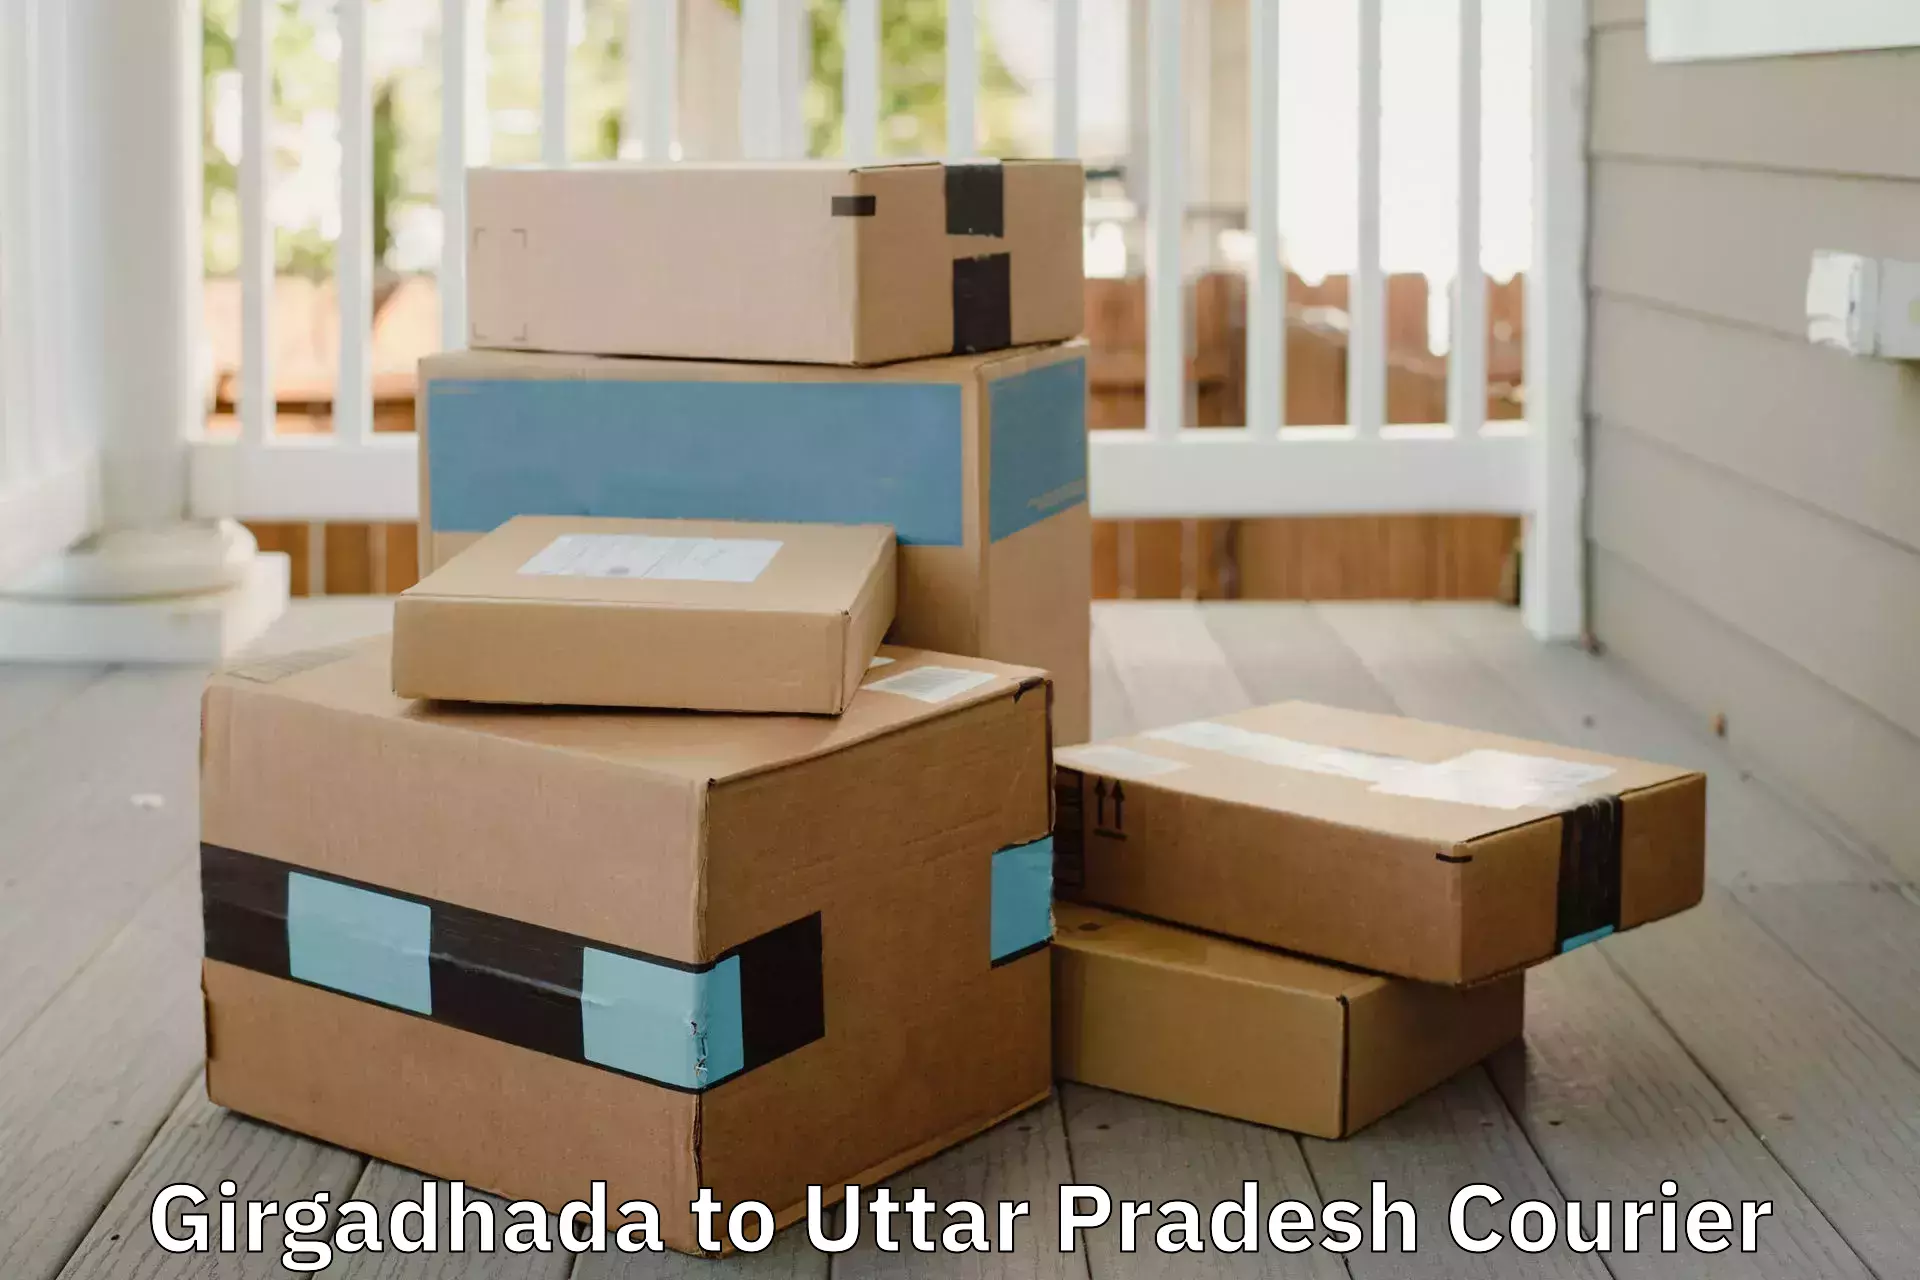 Nationwide furniture movers in Girgadhada to Sandila